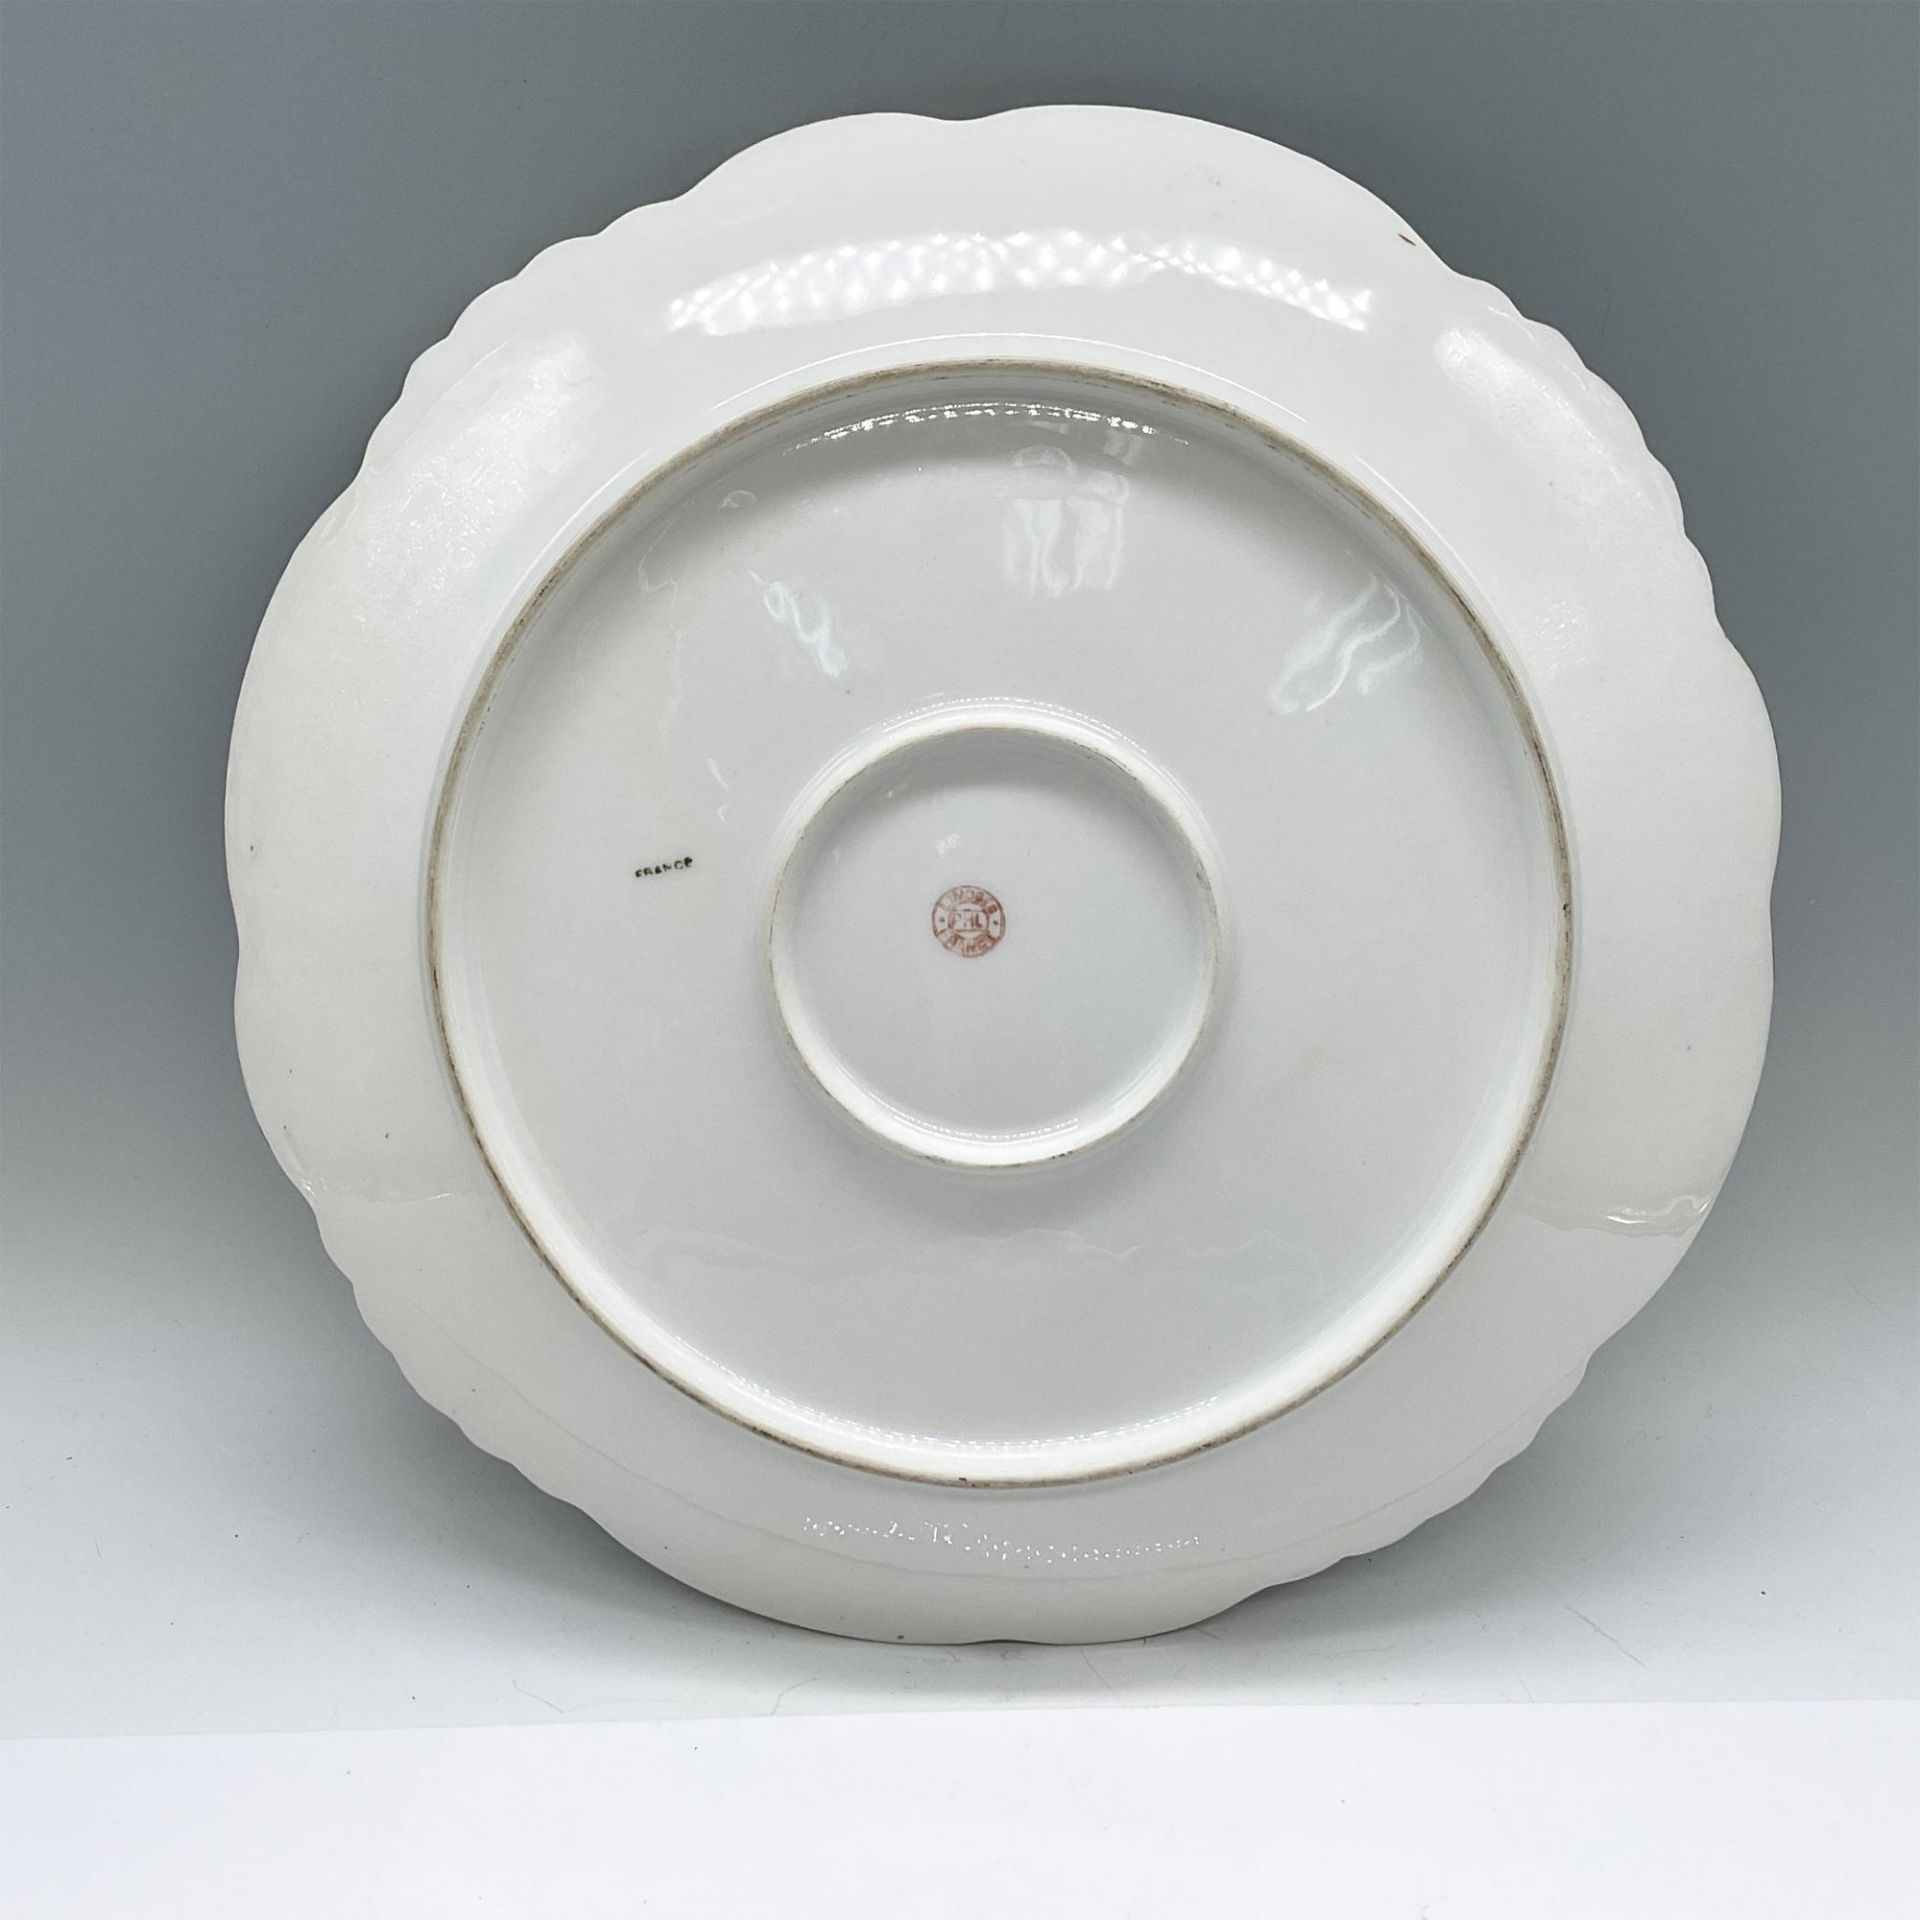 P.H.L. Limoges France Porcelain Tray - Image 2 of 3